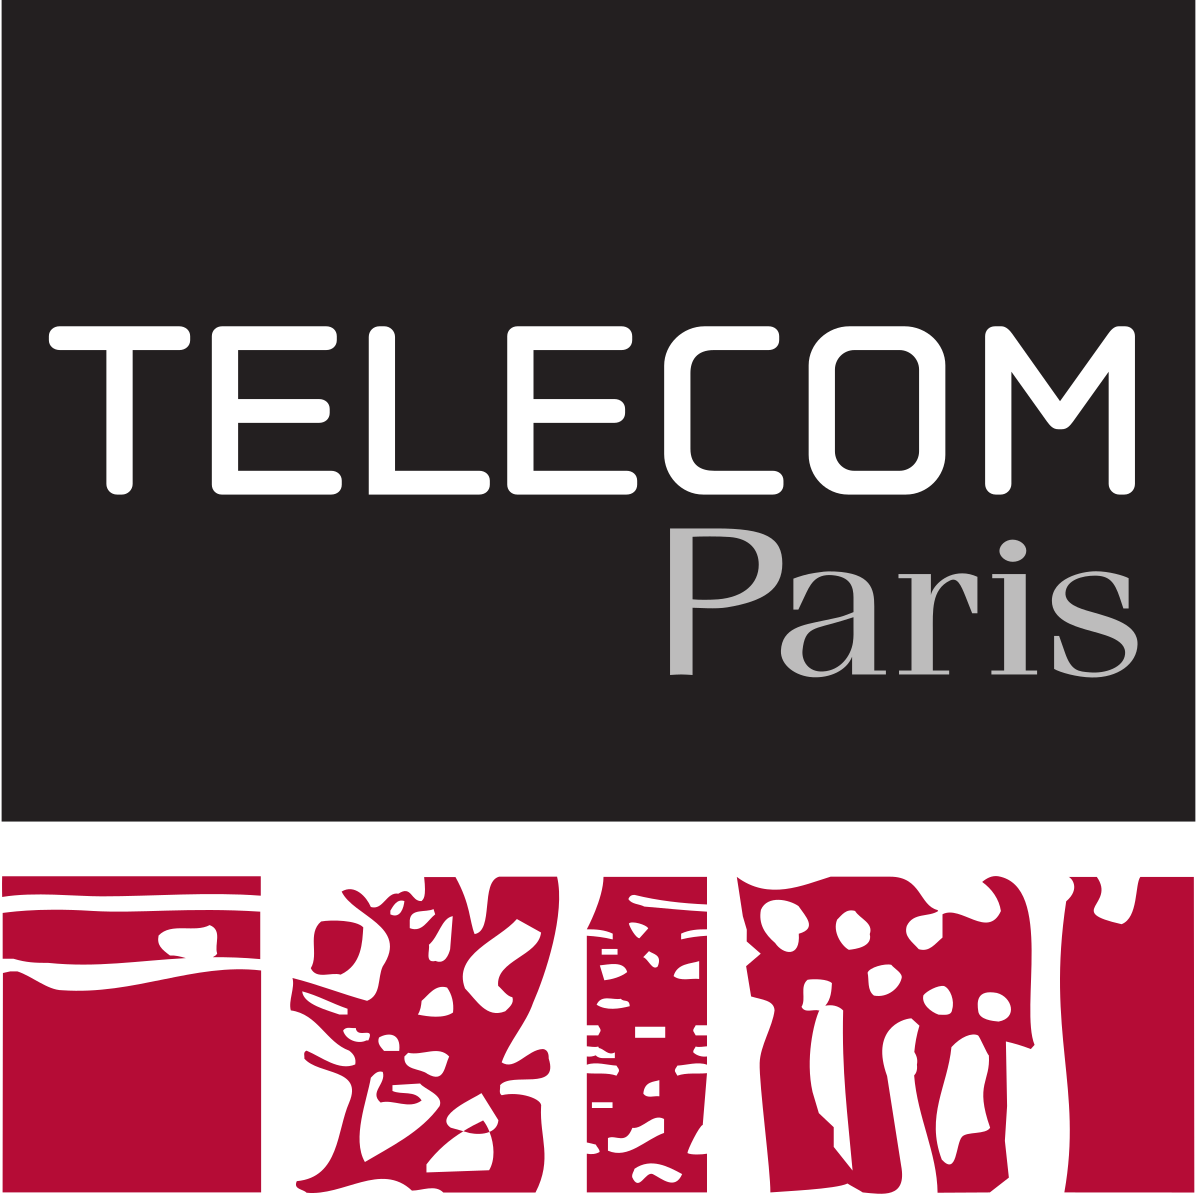 Telecom Paristech logo